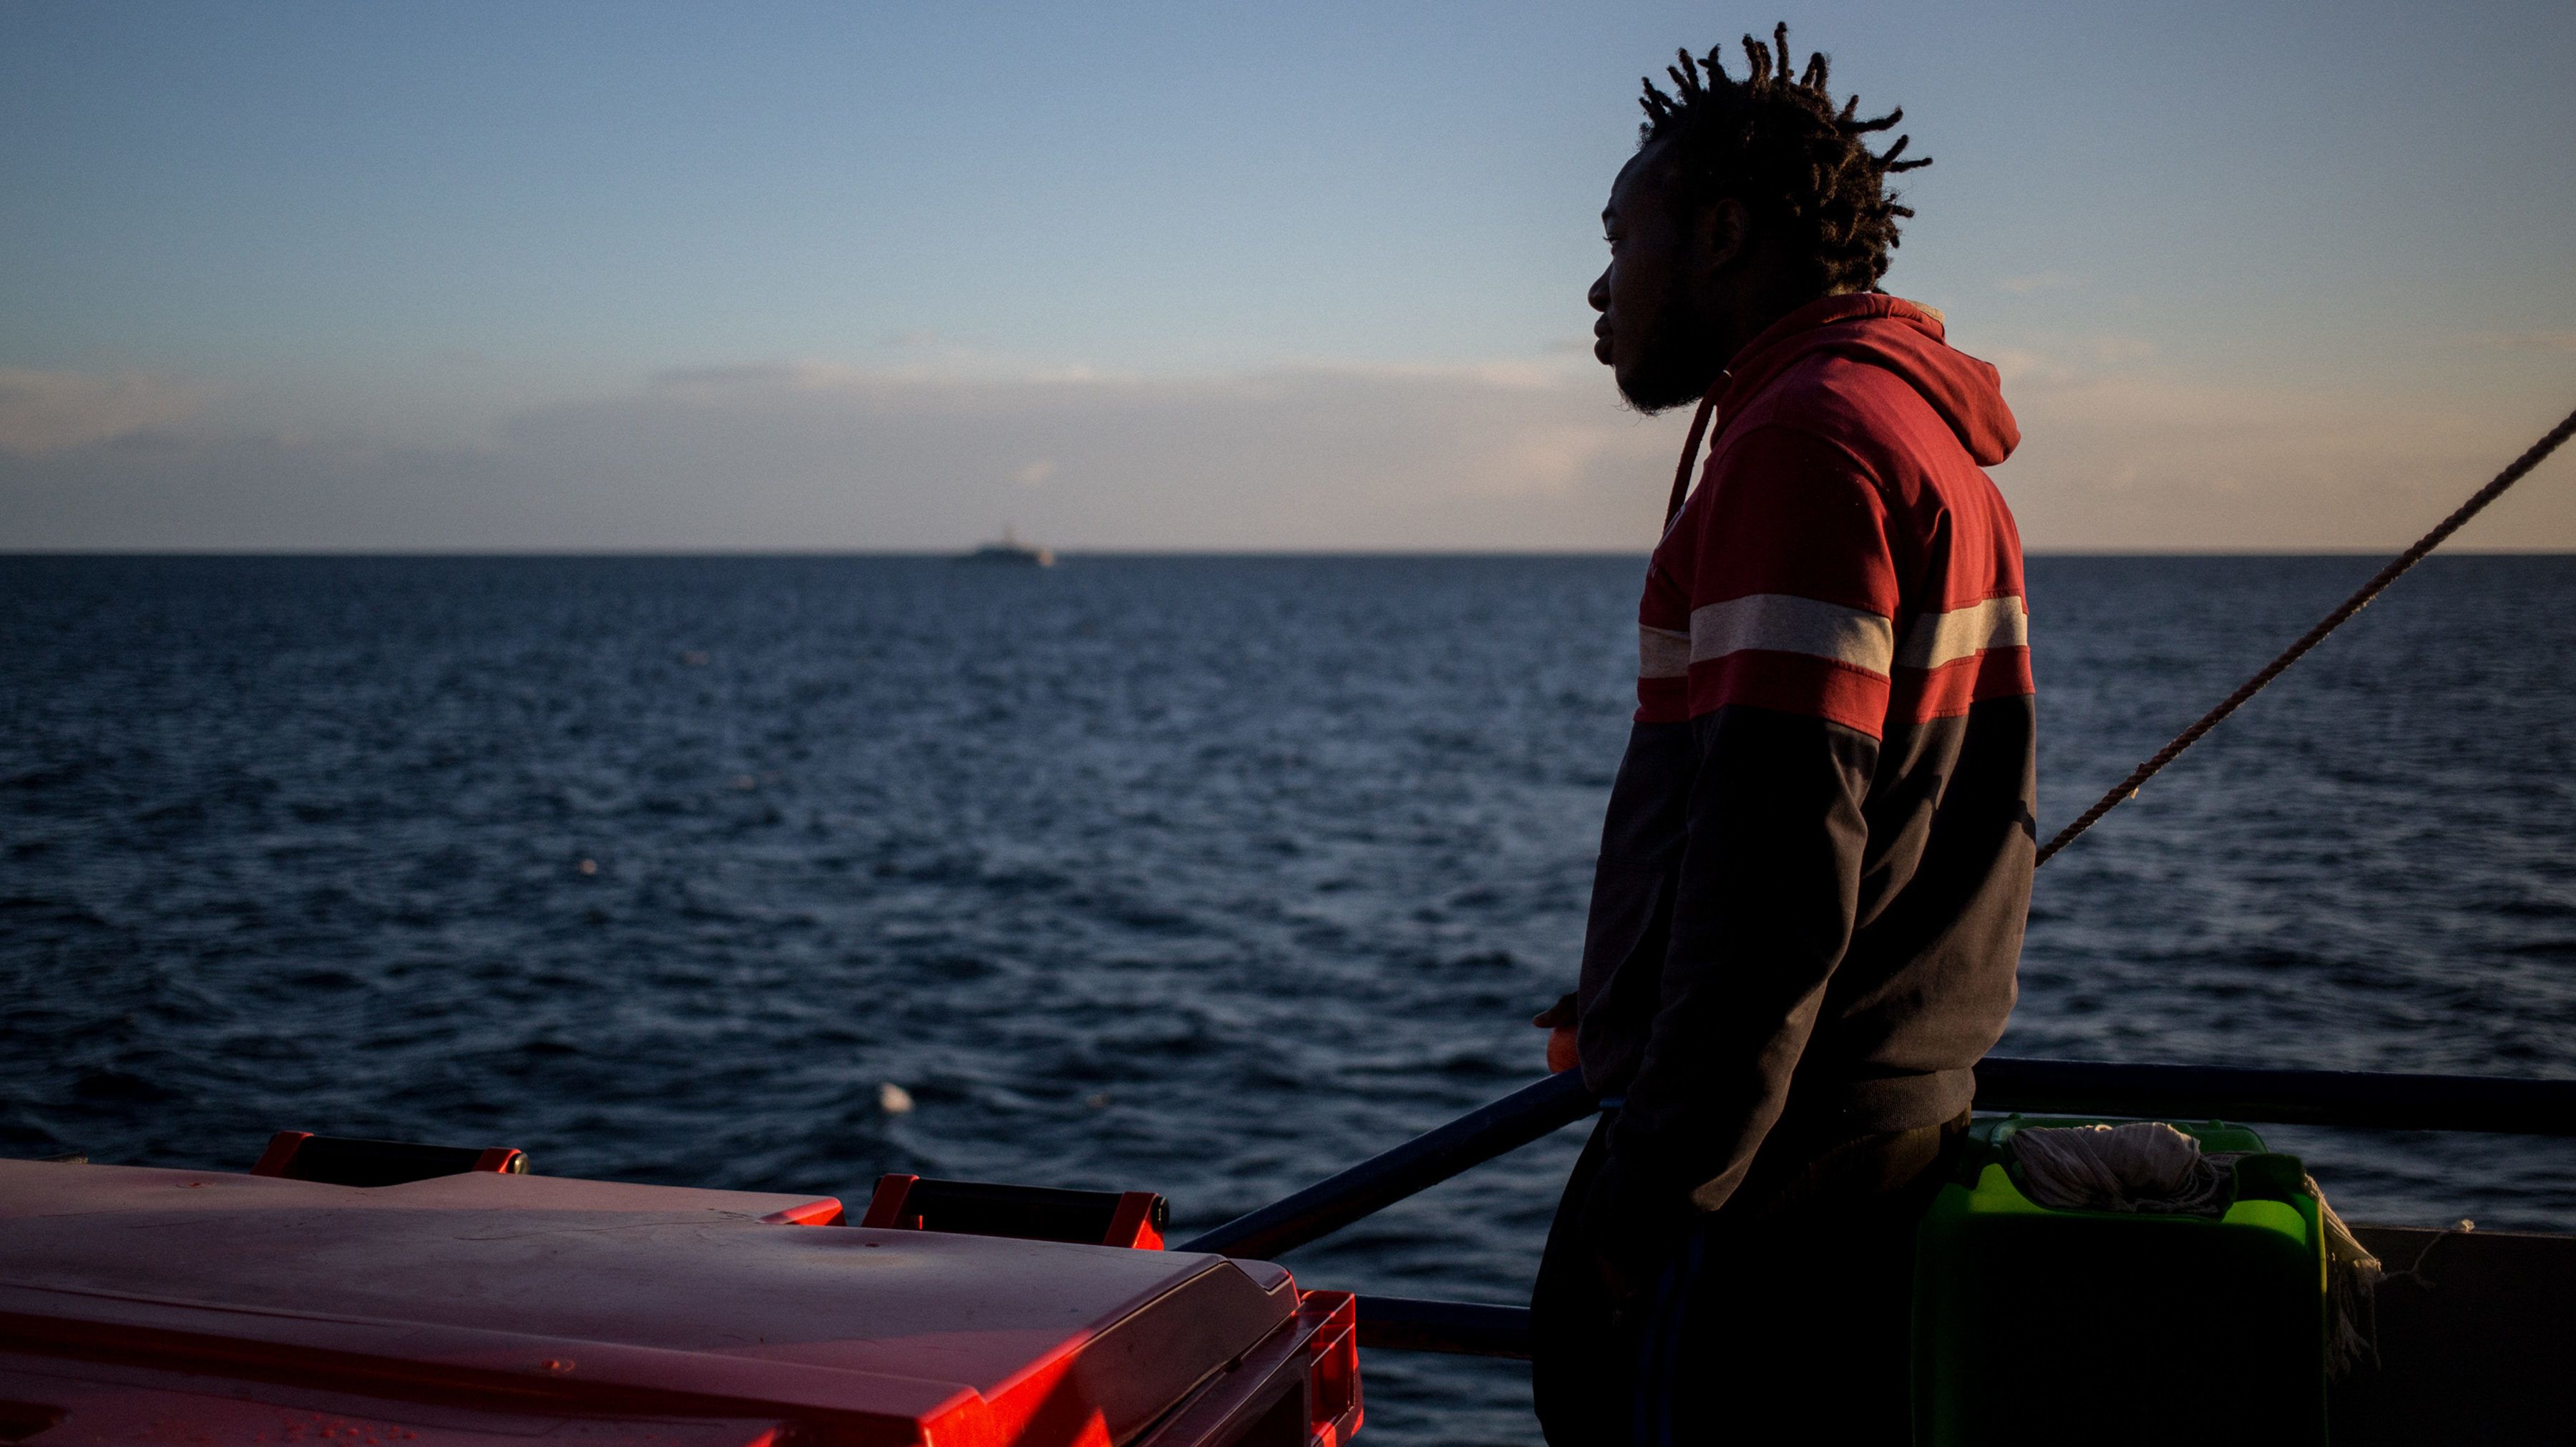 Menekültek térítettek el egy teherhajót a Földközi-tengeren